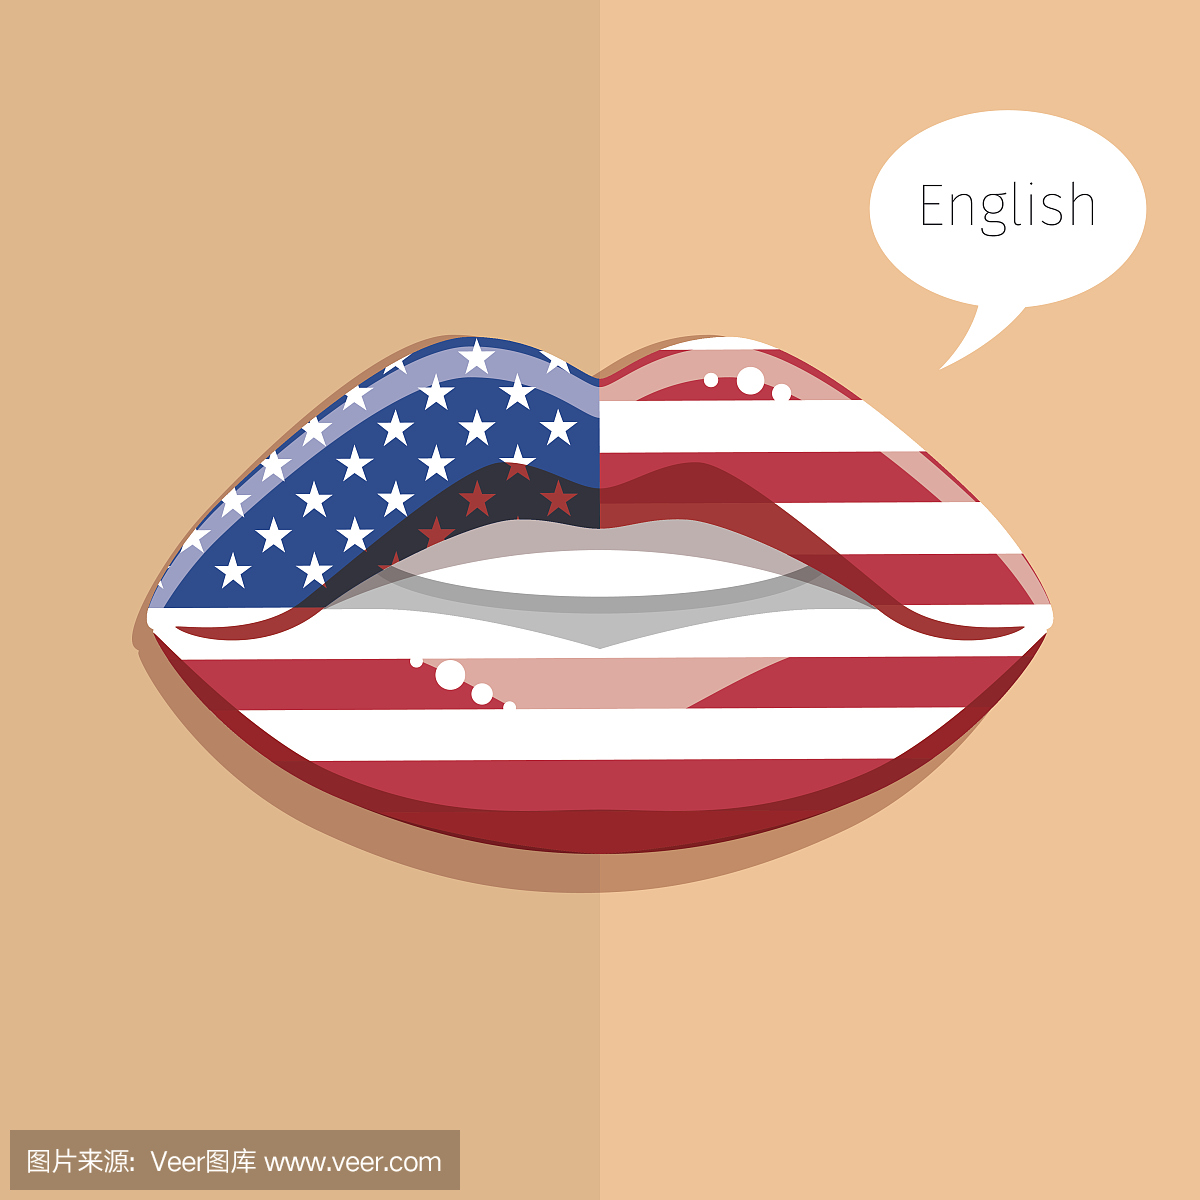 英语美国语言概念